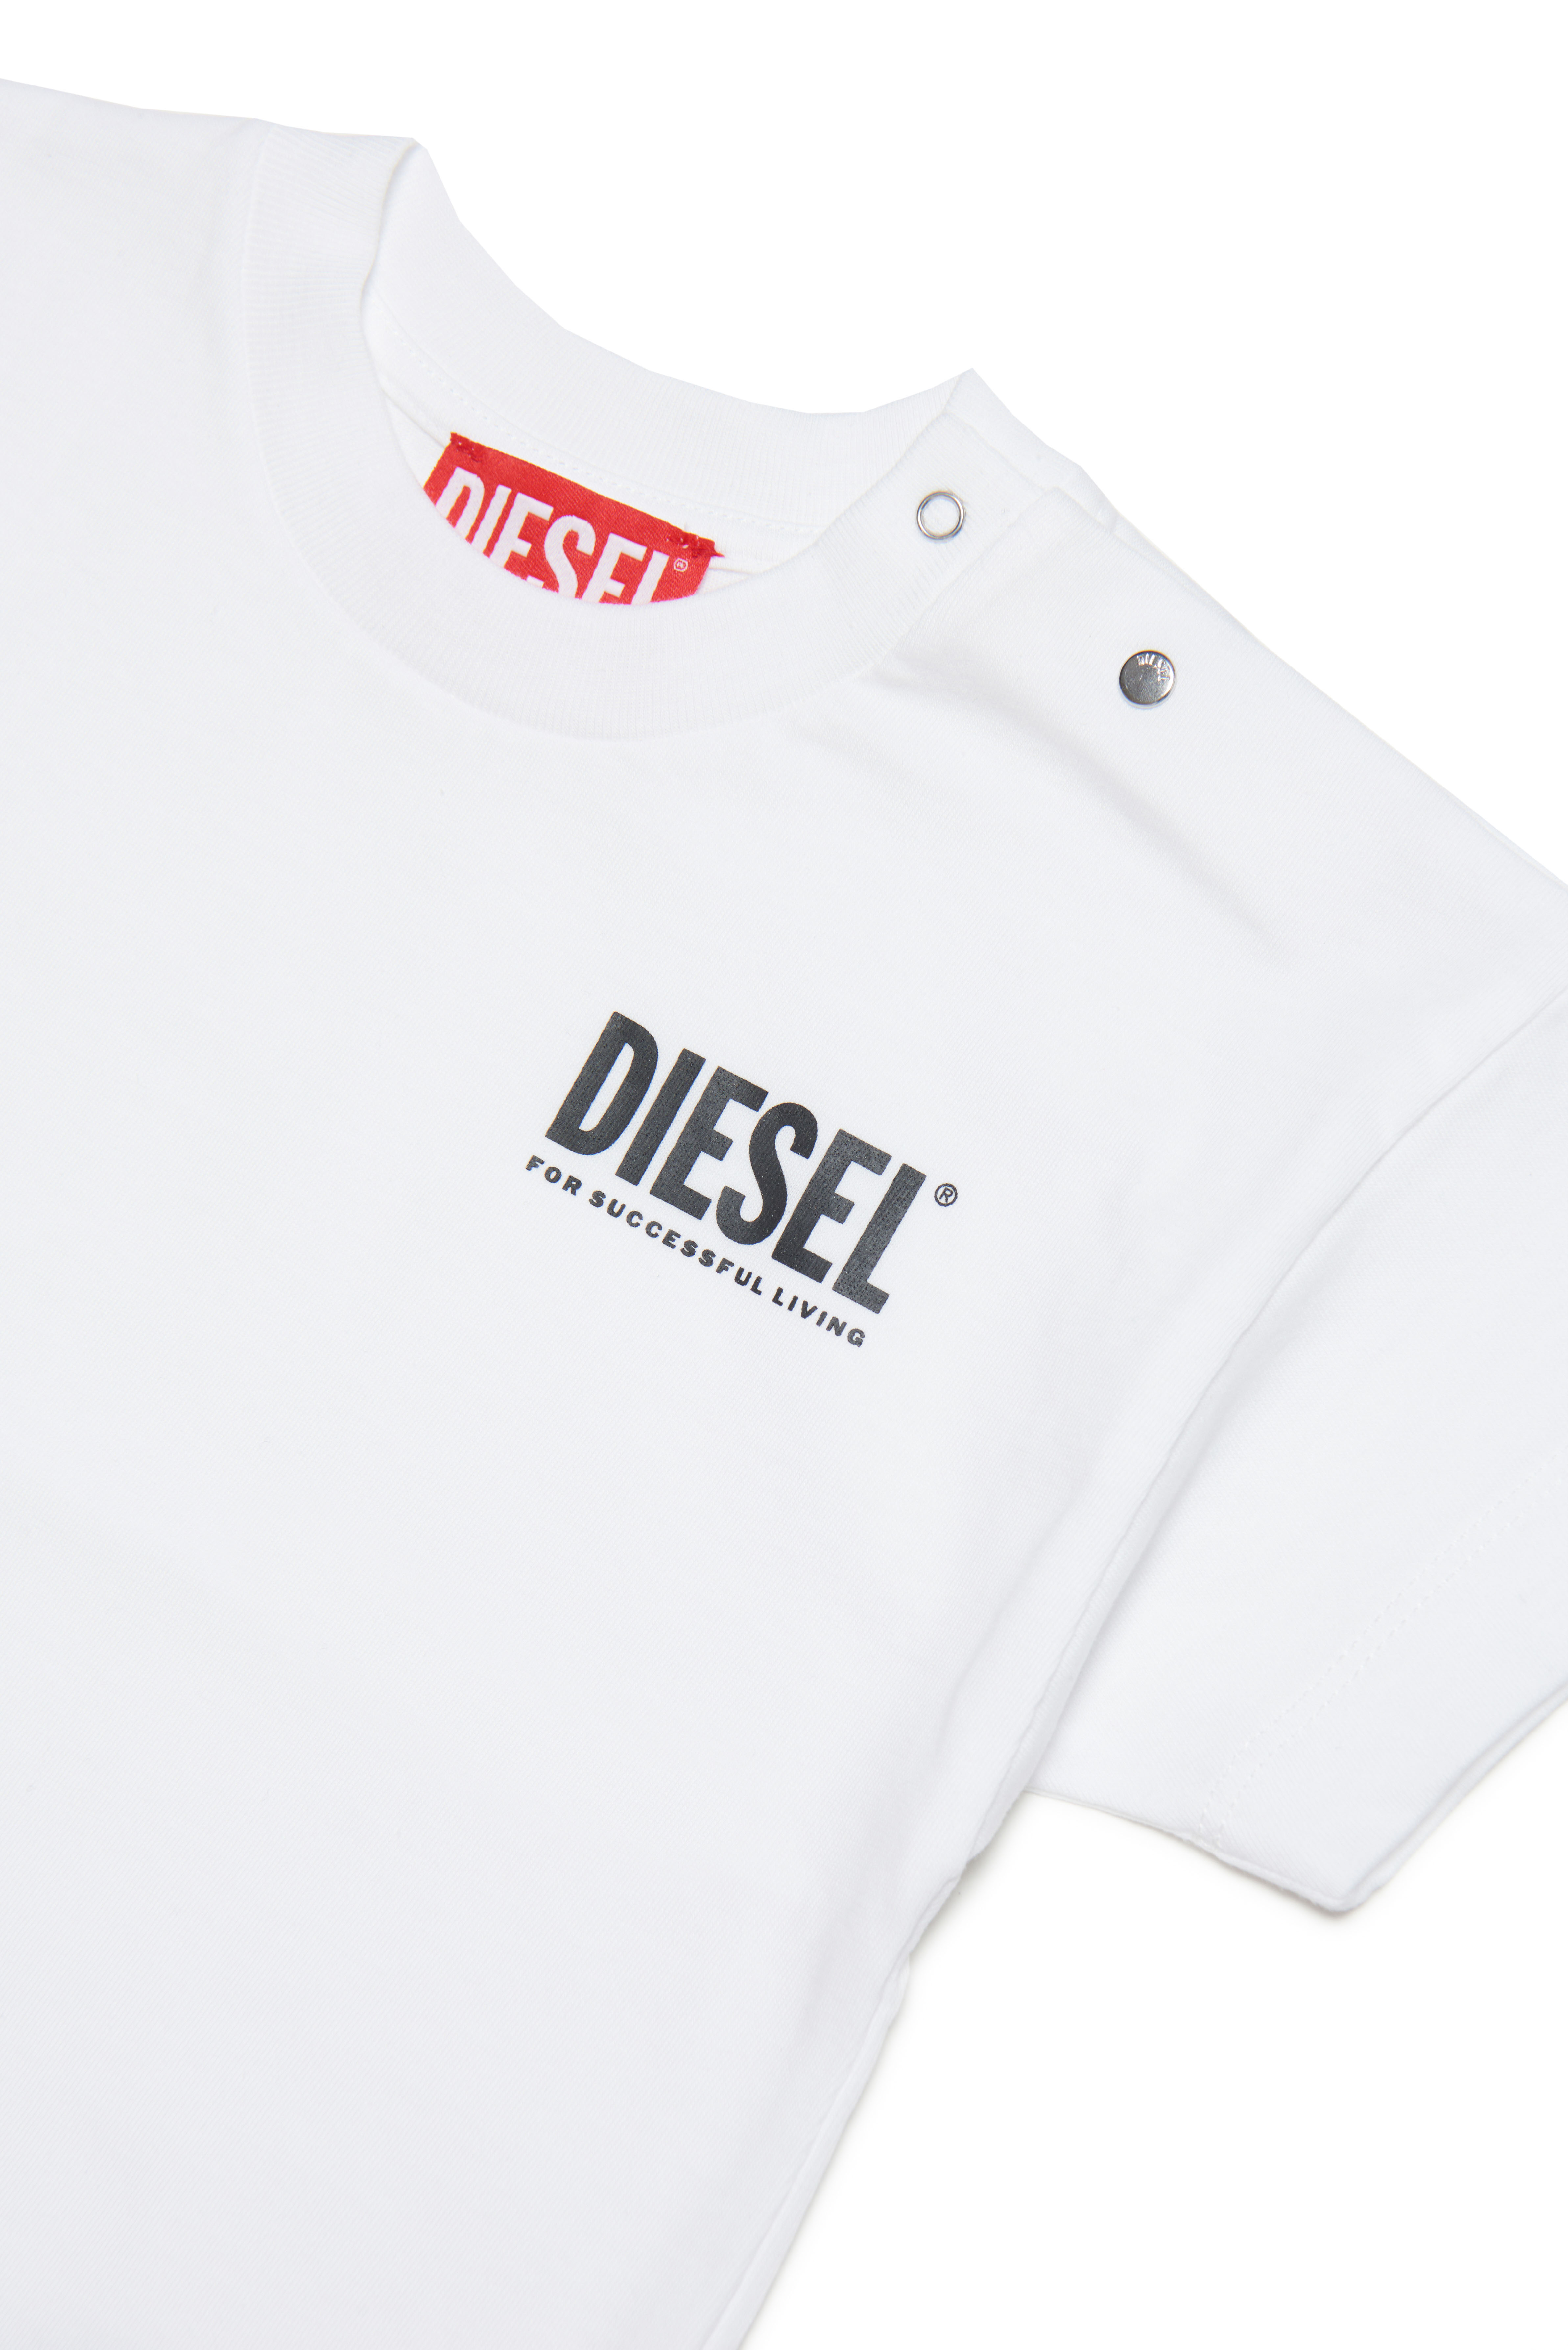 Diesel - TLARRIB, White - Image 3